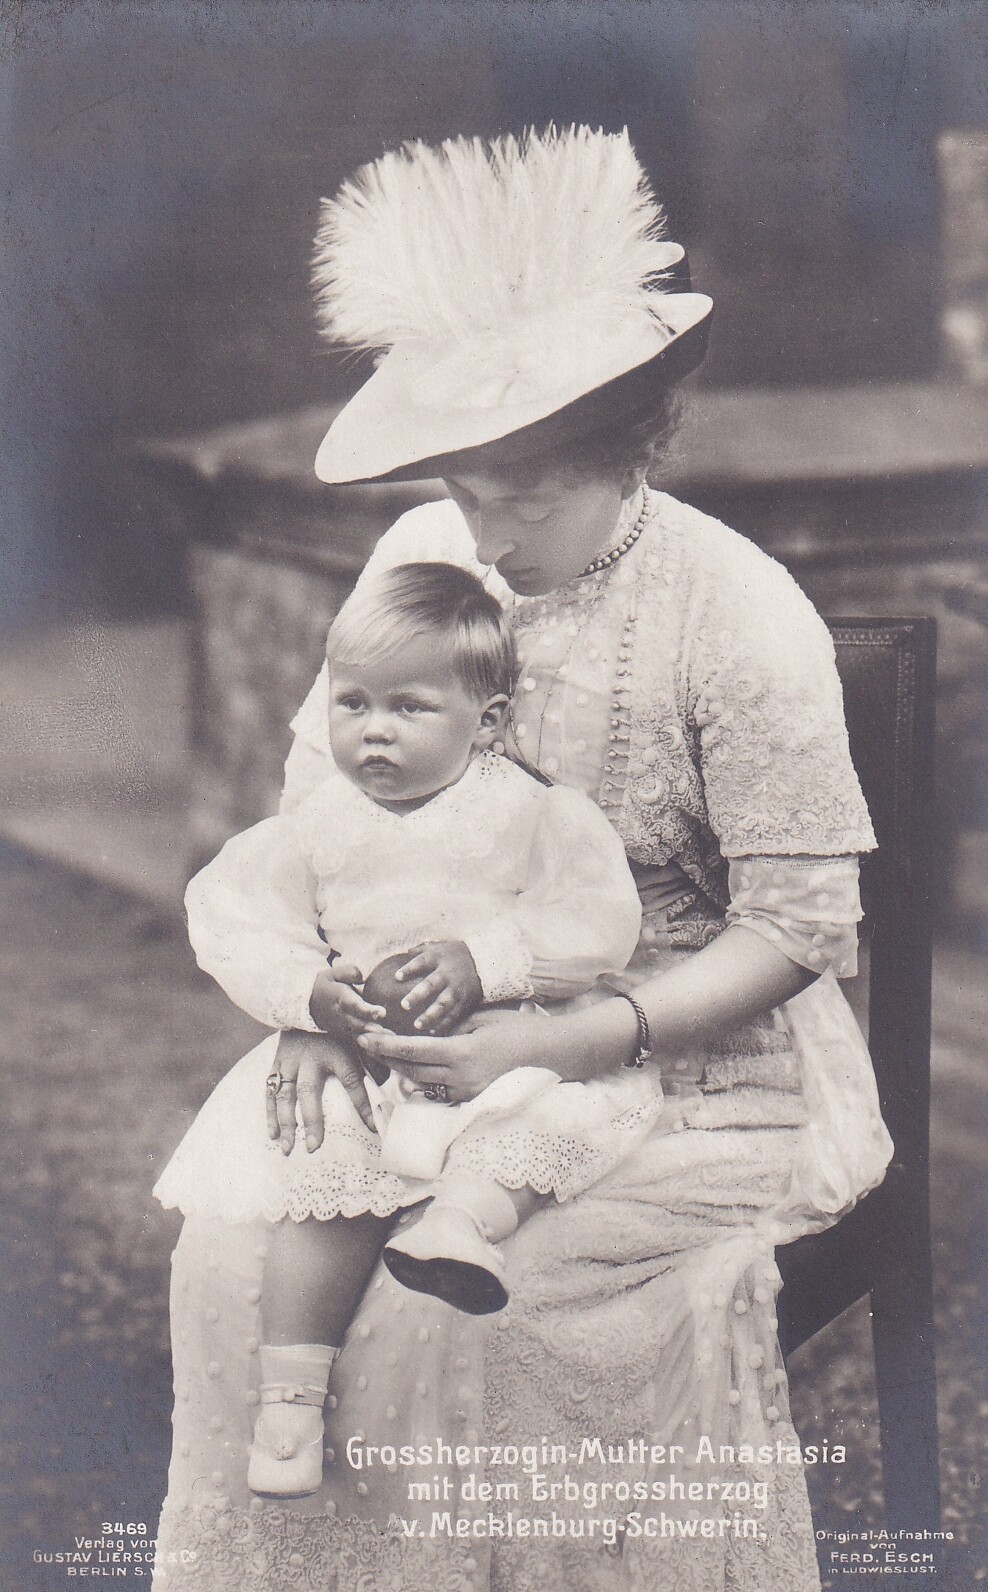 Bildpostkarte mt Foto der Großherzogin-Mutter Anastasia von Mecklenburg-Schwerin mit ihrem ältesten Enkel, 1911 (Schloß Wernigerode GmbH RR-F)